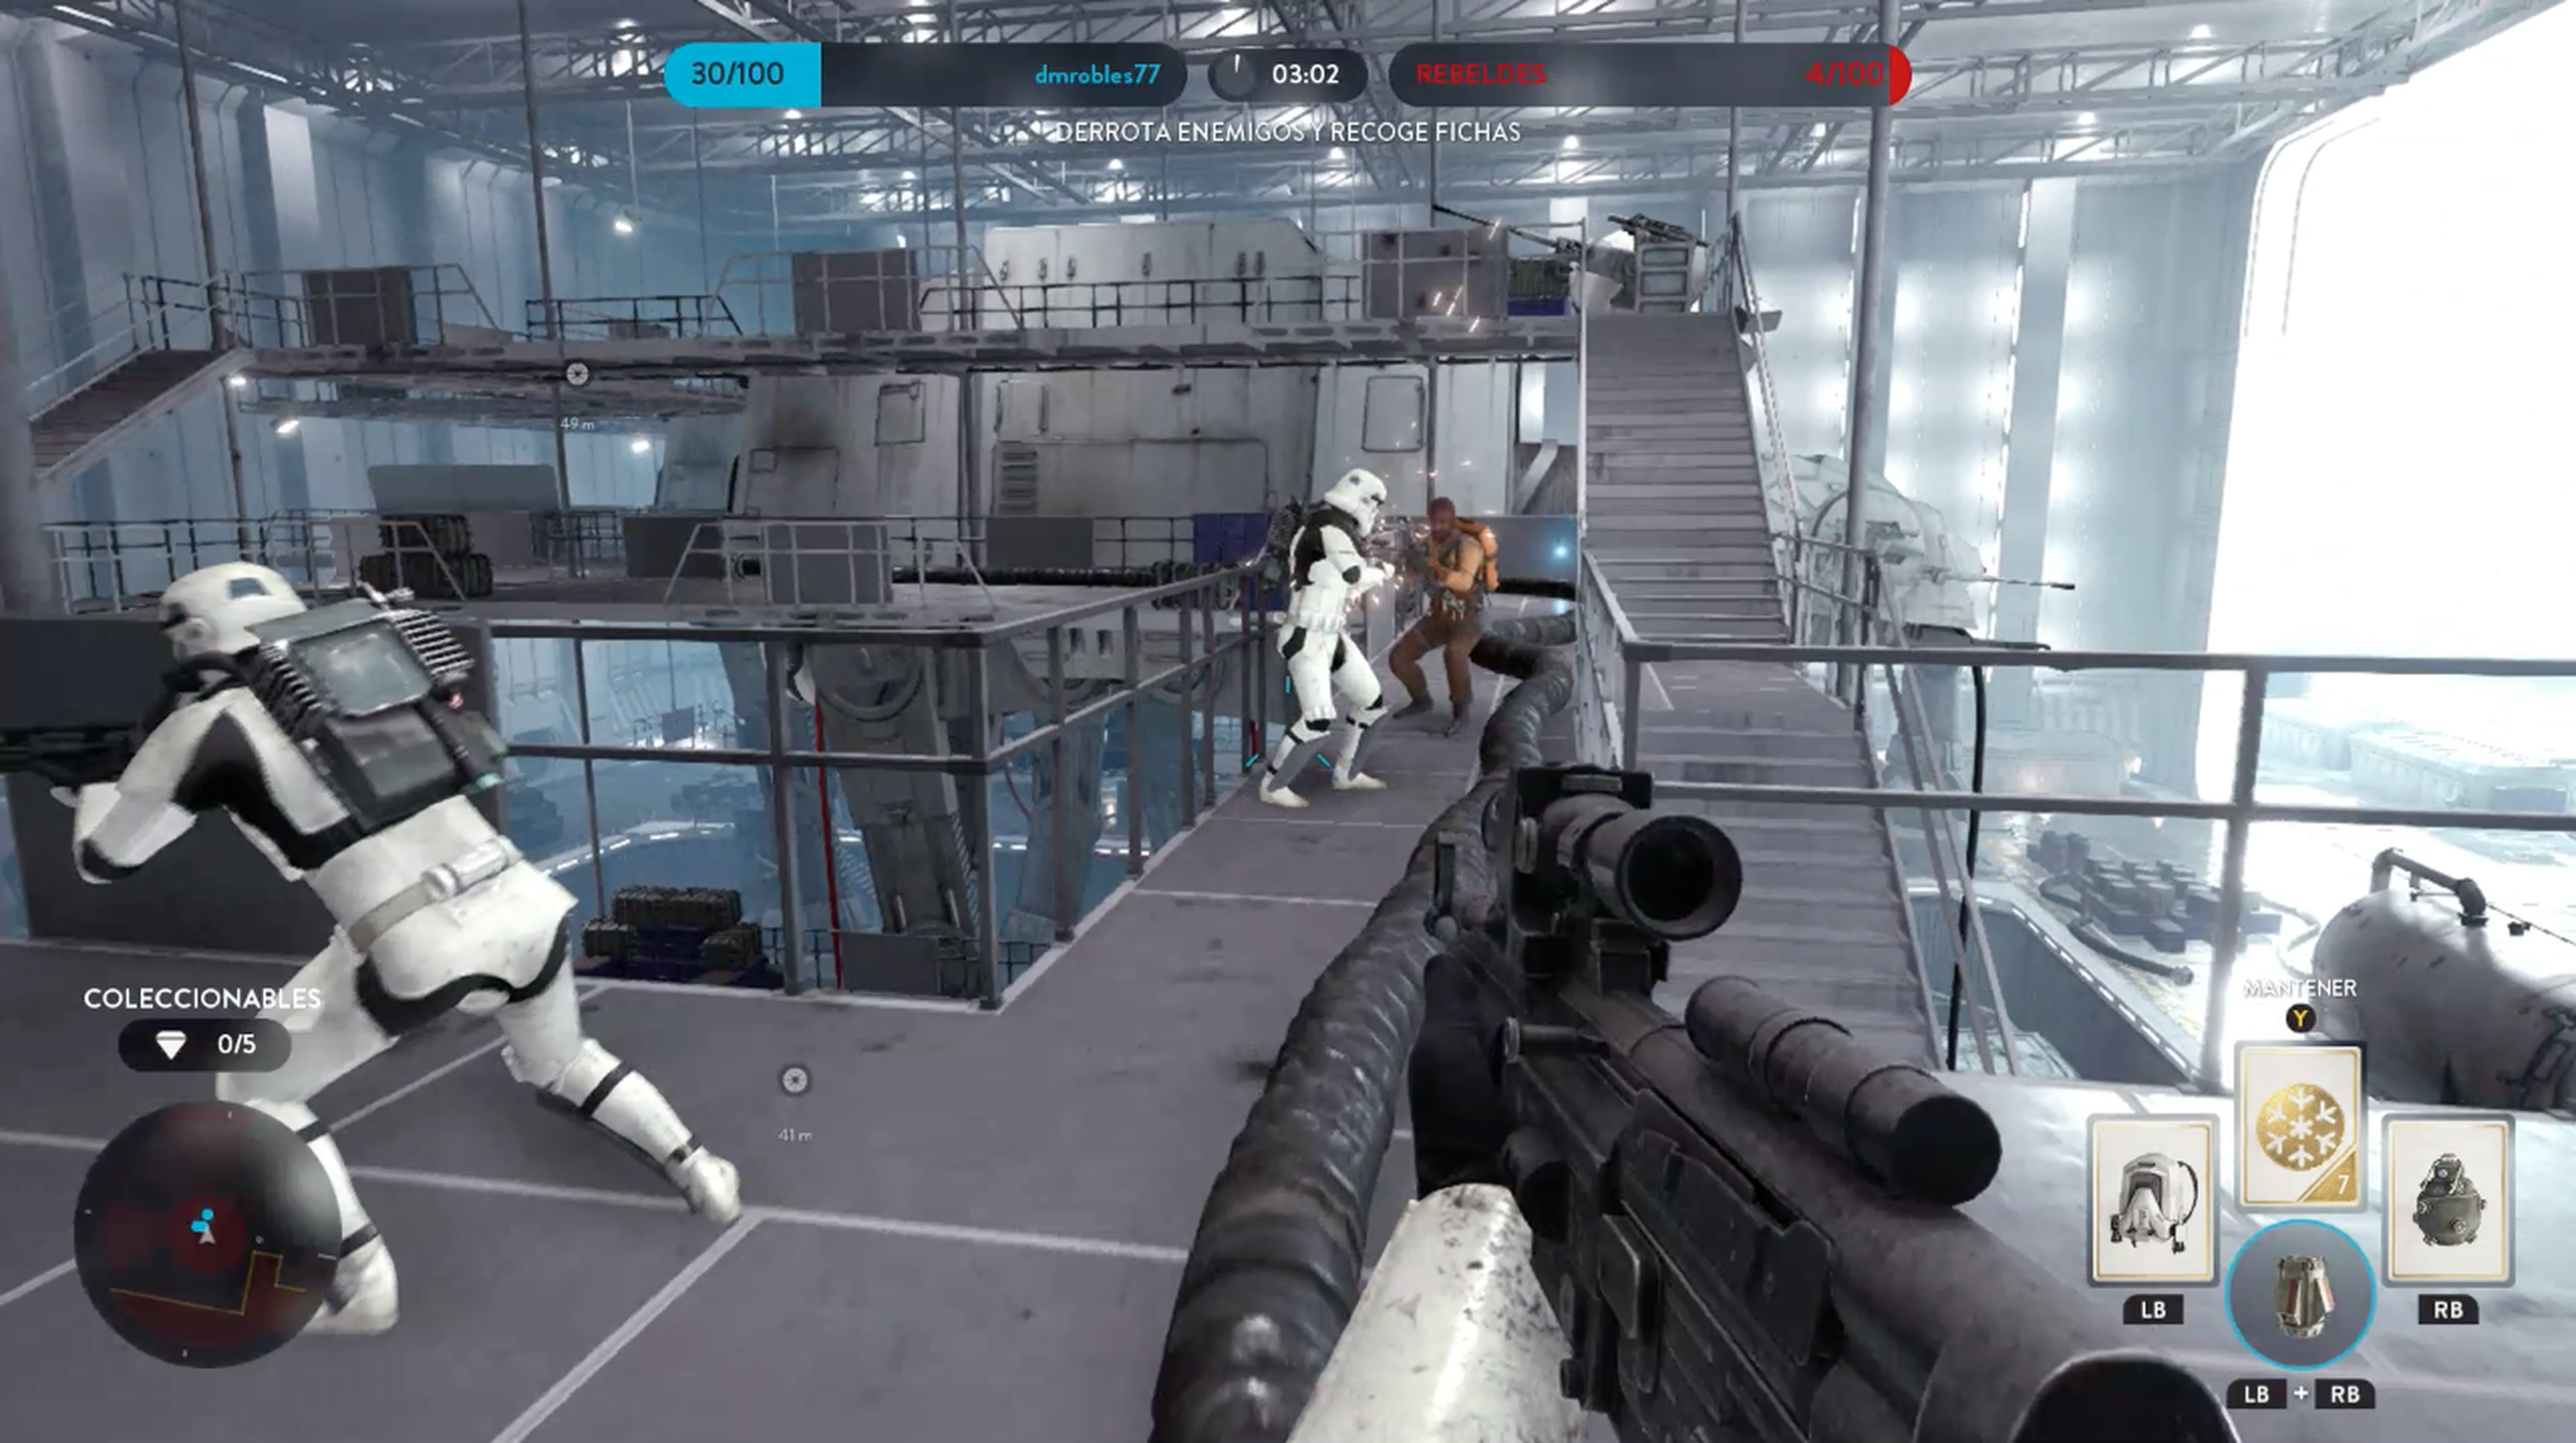 Análisis de Star Wars Battlefront para PS4, Xbox One y PC